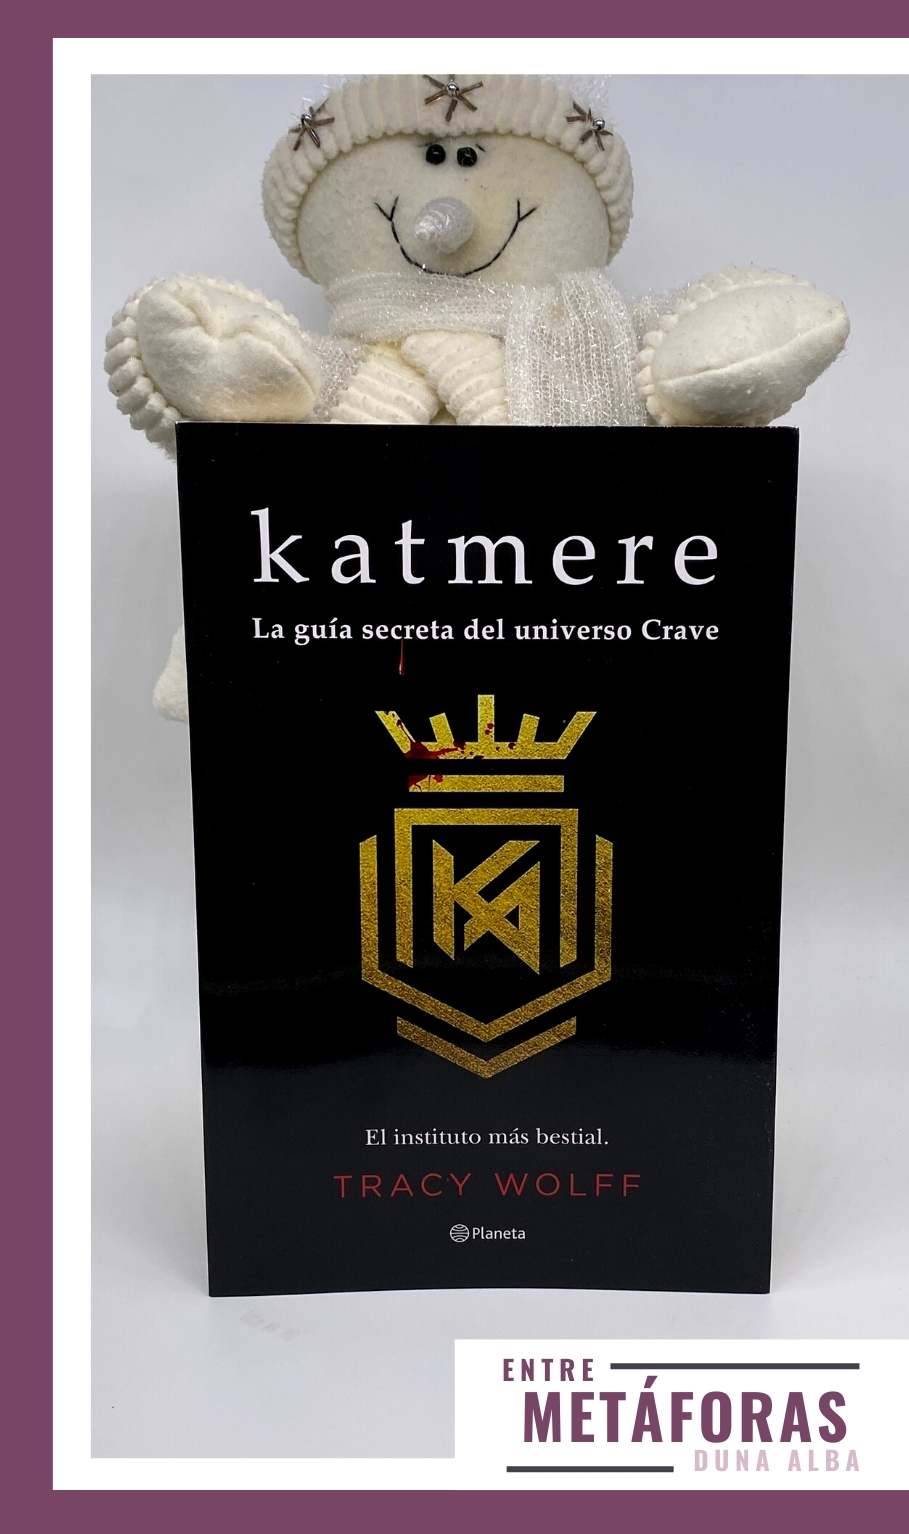 Katmere: La guía secreta del universo Crave, de Tracy Wolff